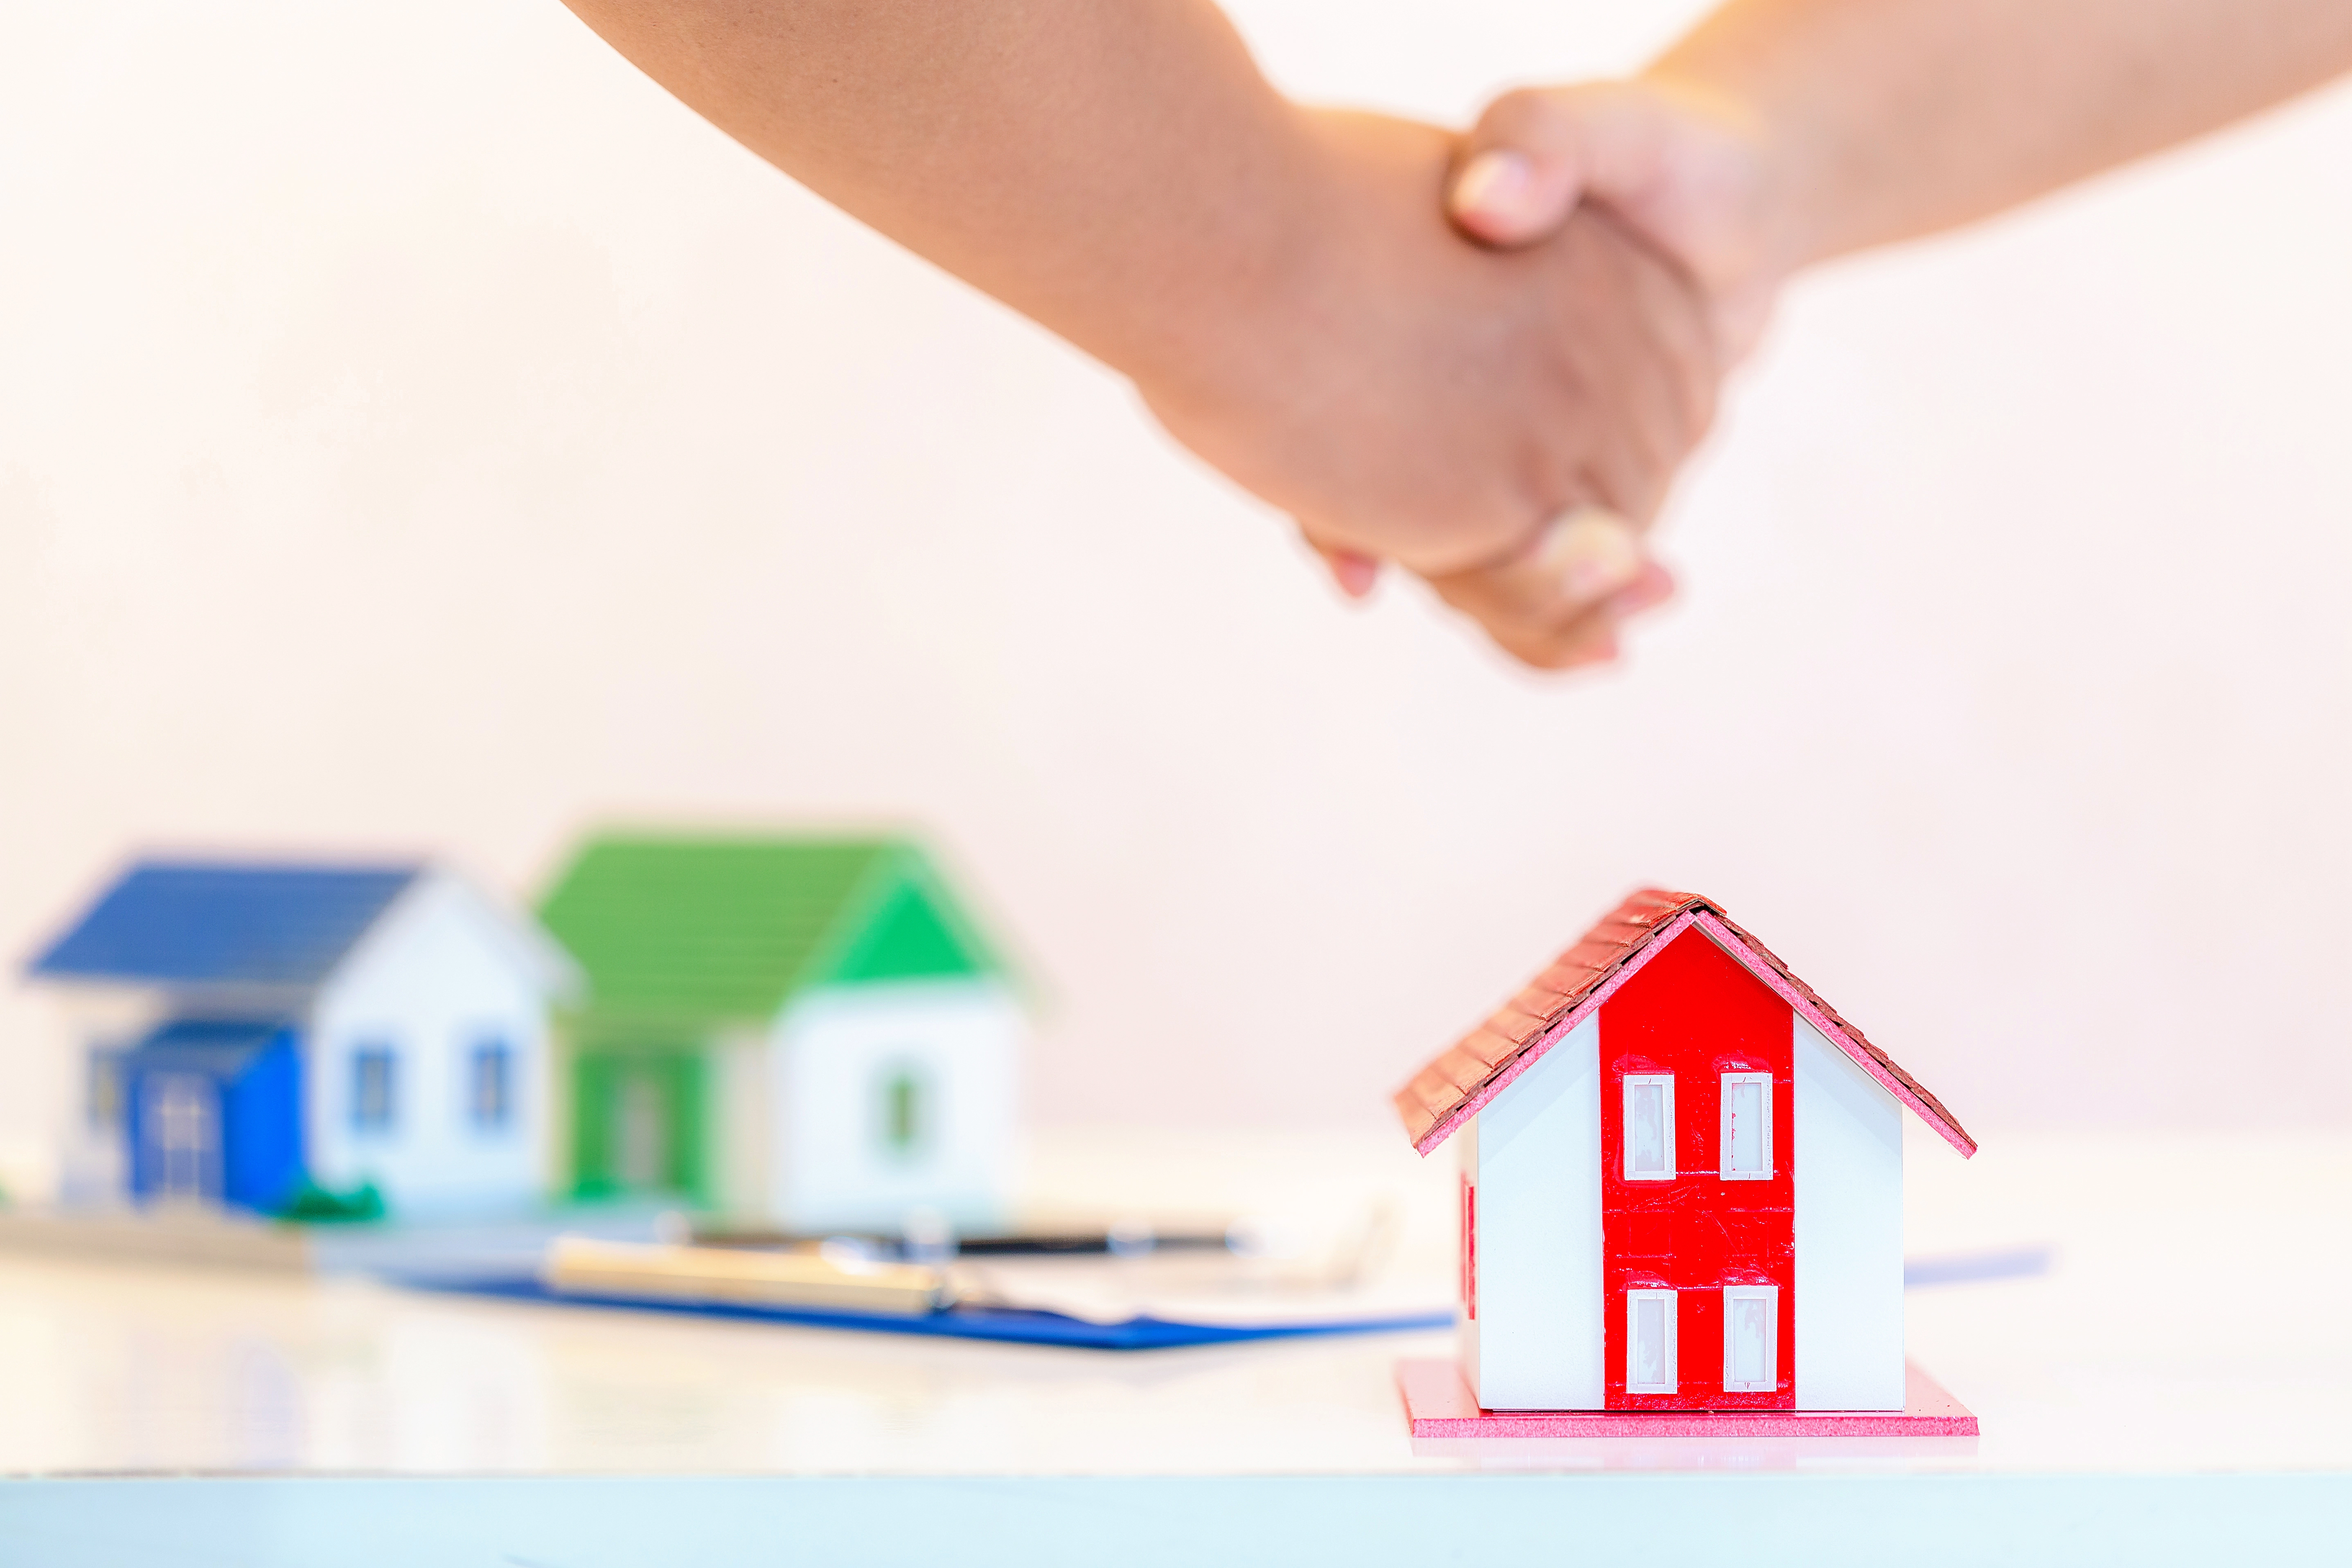 L'<strong>assurance habitation à Vitrolles</strong> garantit la couverture du logement, du mobilier et la responsabilité civile vie privée tout en excluant certains biens immobiliers. #assurancehabitation